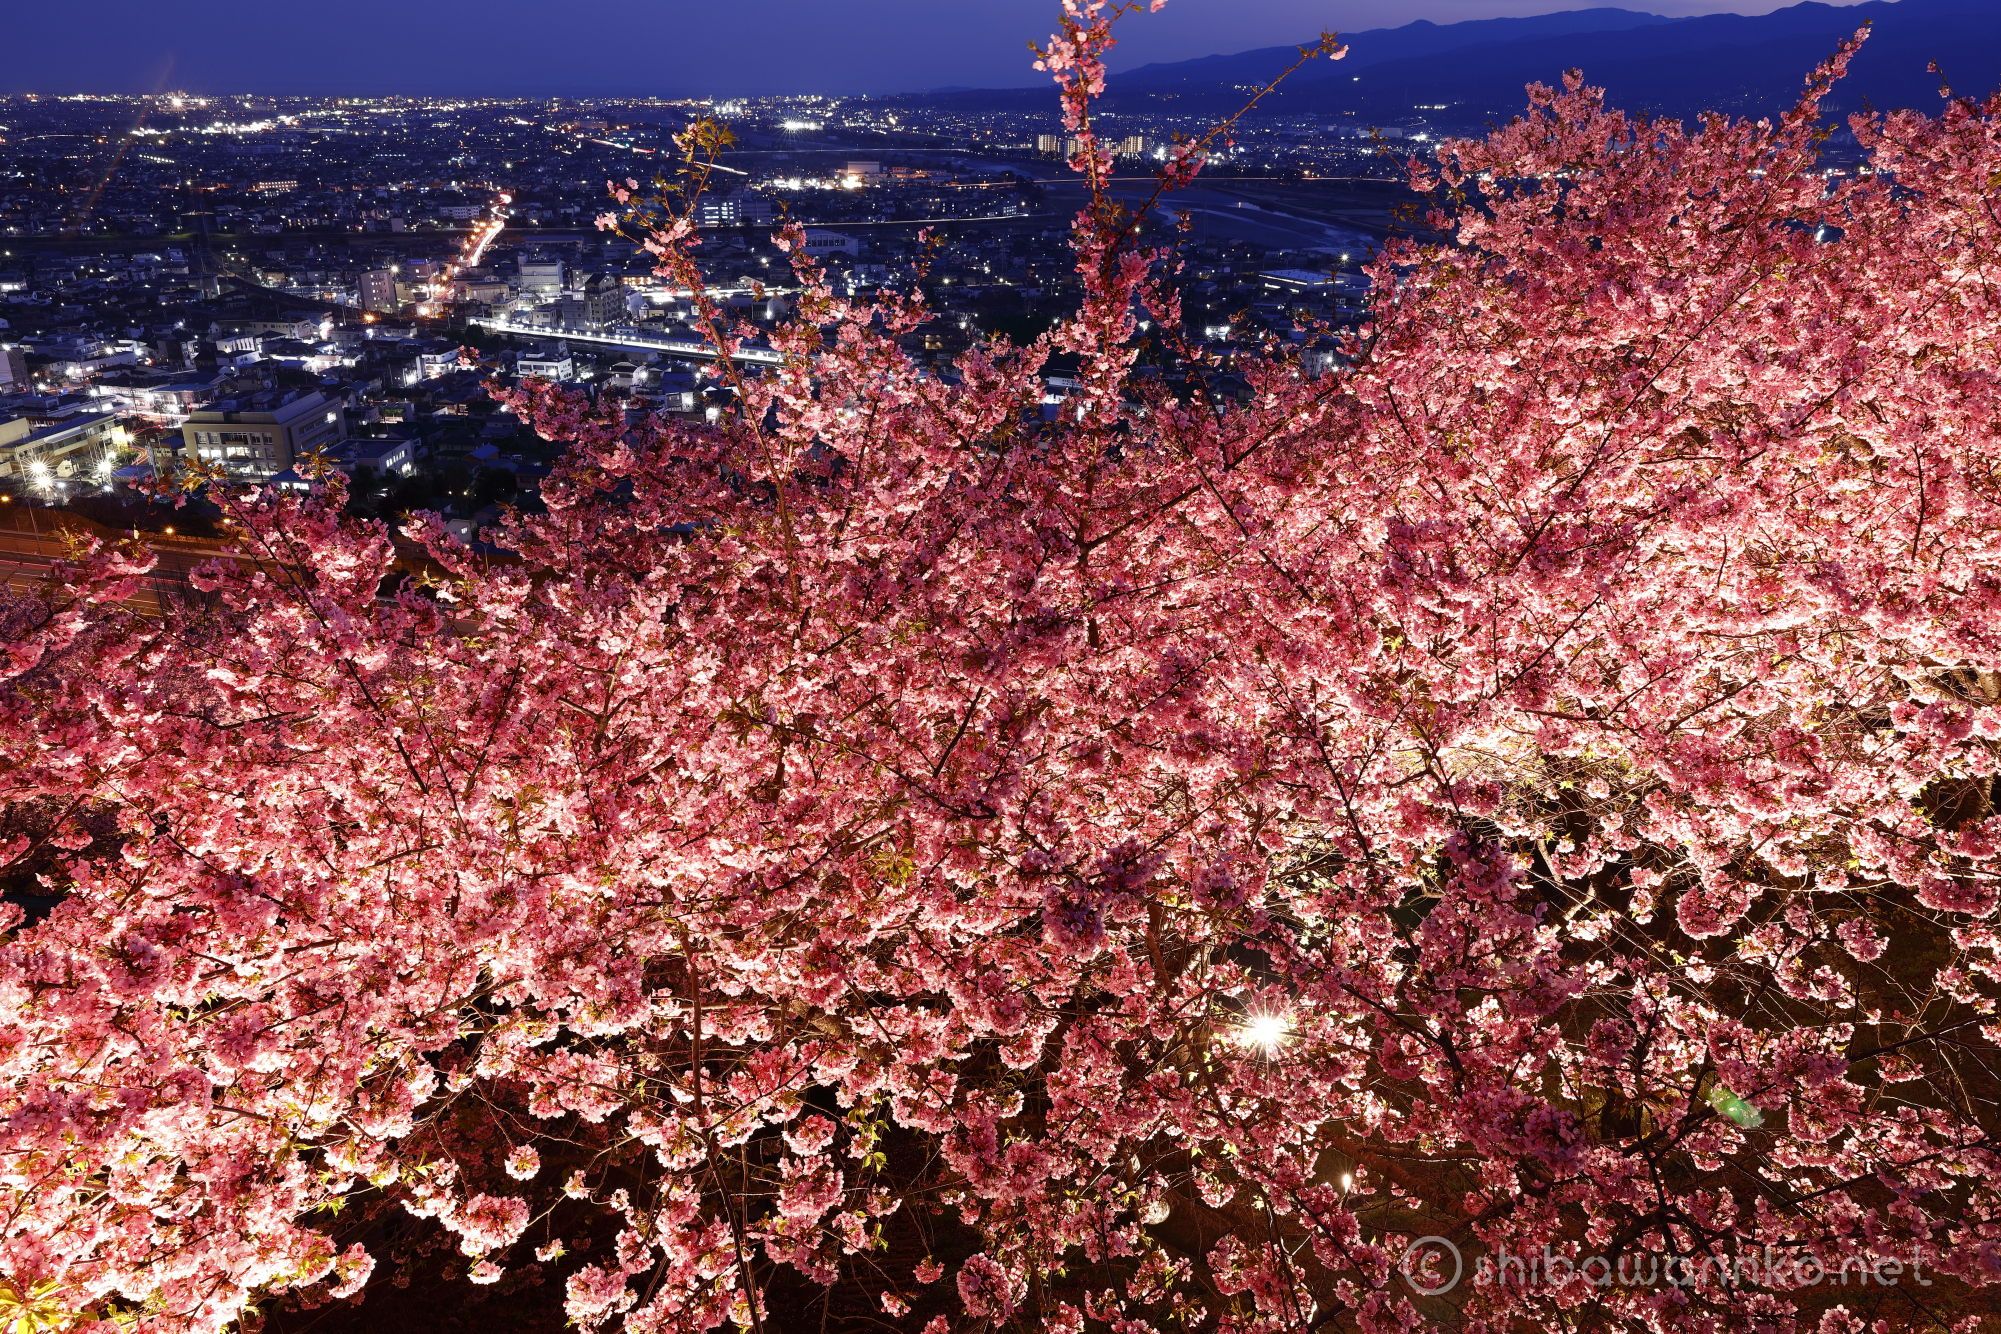 松田山ハーブガーデン 16 マジックアワーを狙って 河津桜と菜の花のライトアップ Shibawannkoの撮影山行